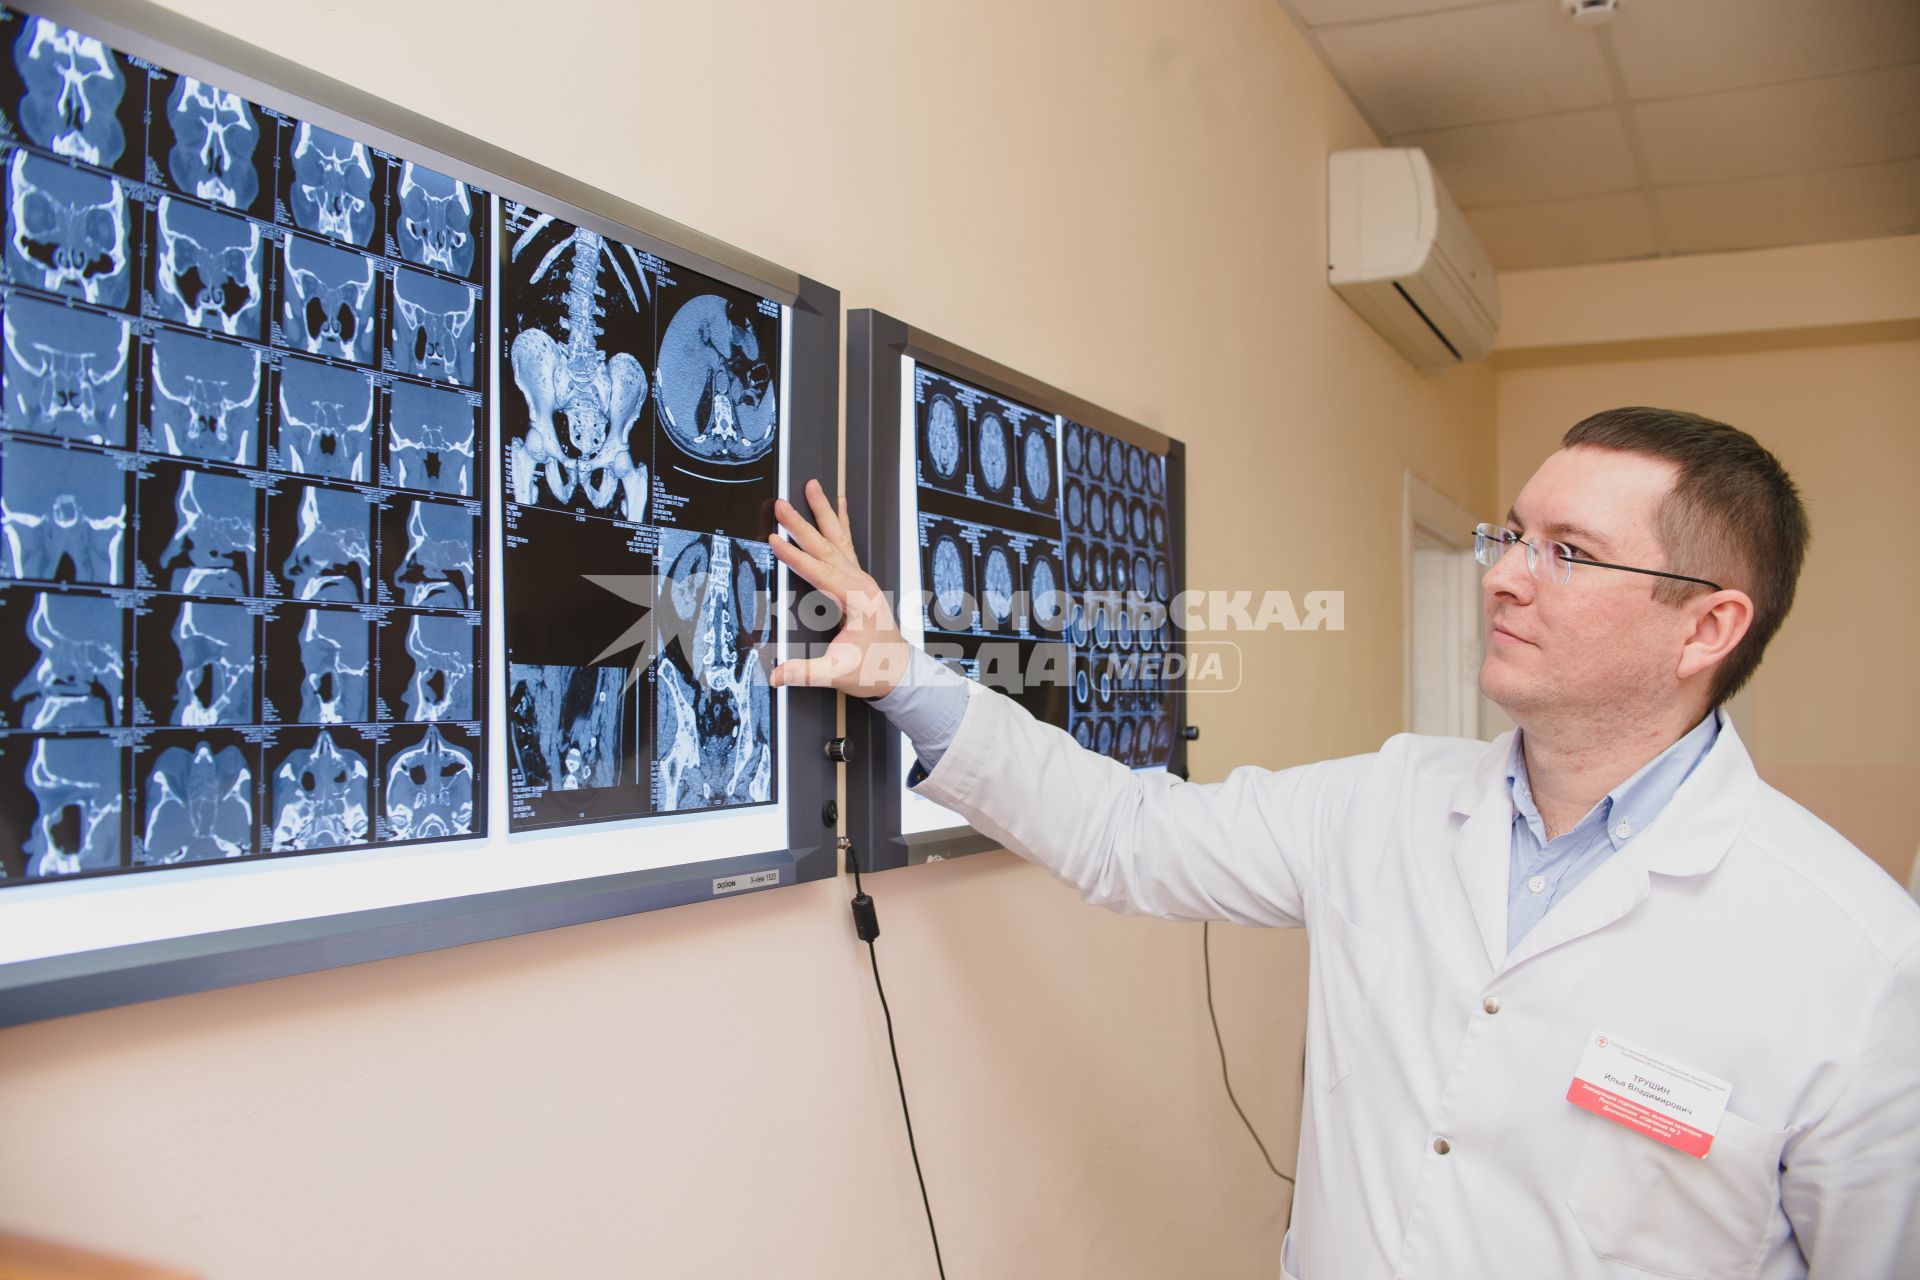 Челябинск. МУЗ Диагностический центр.  Врач изучает результаты магнитно-резонансной томографии.